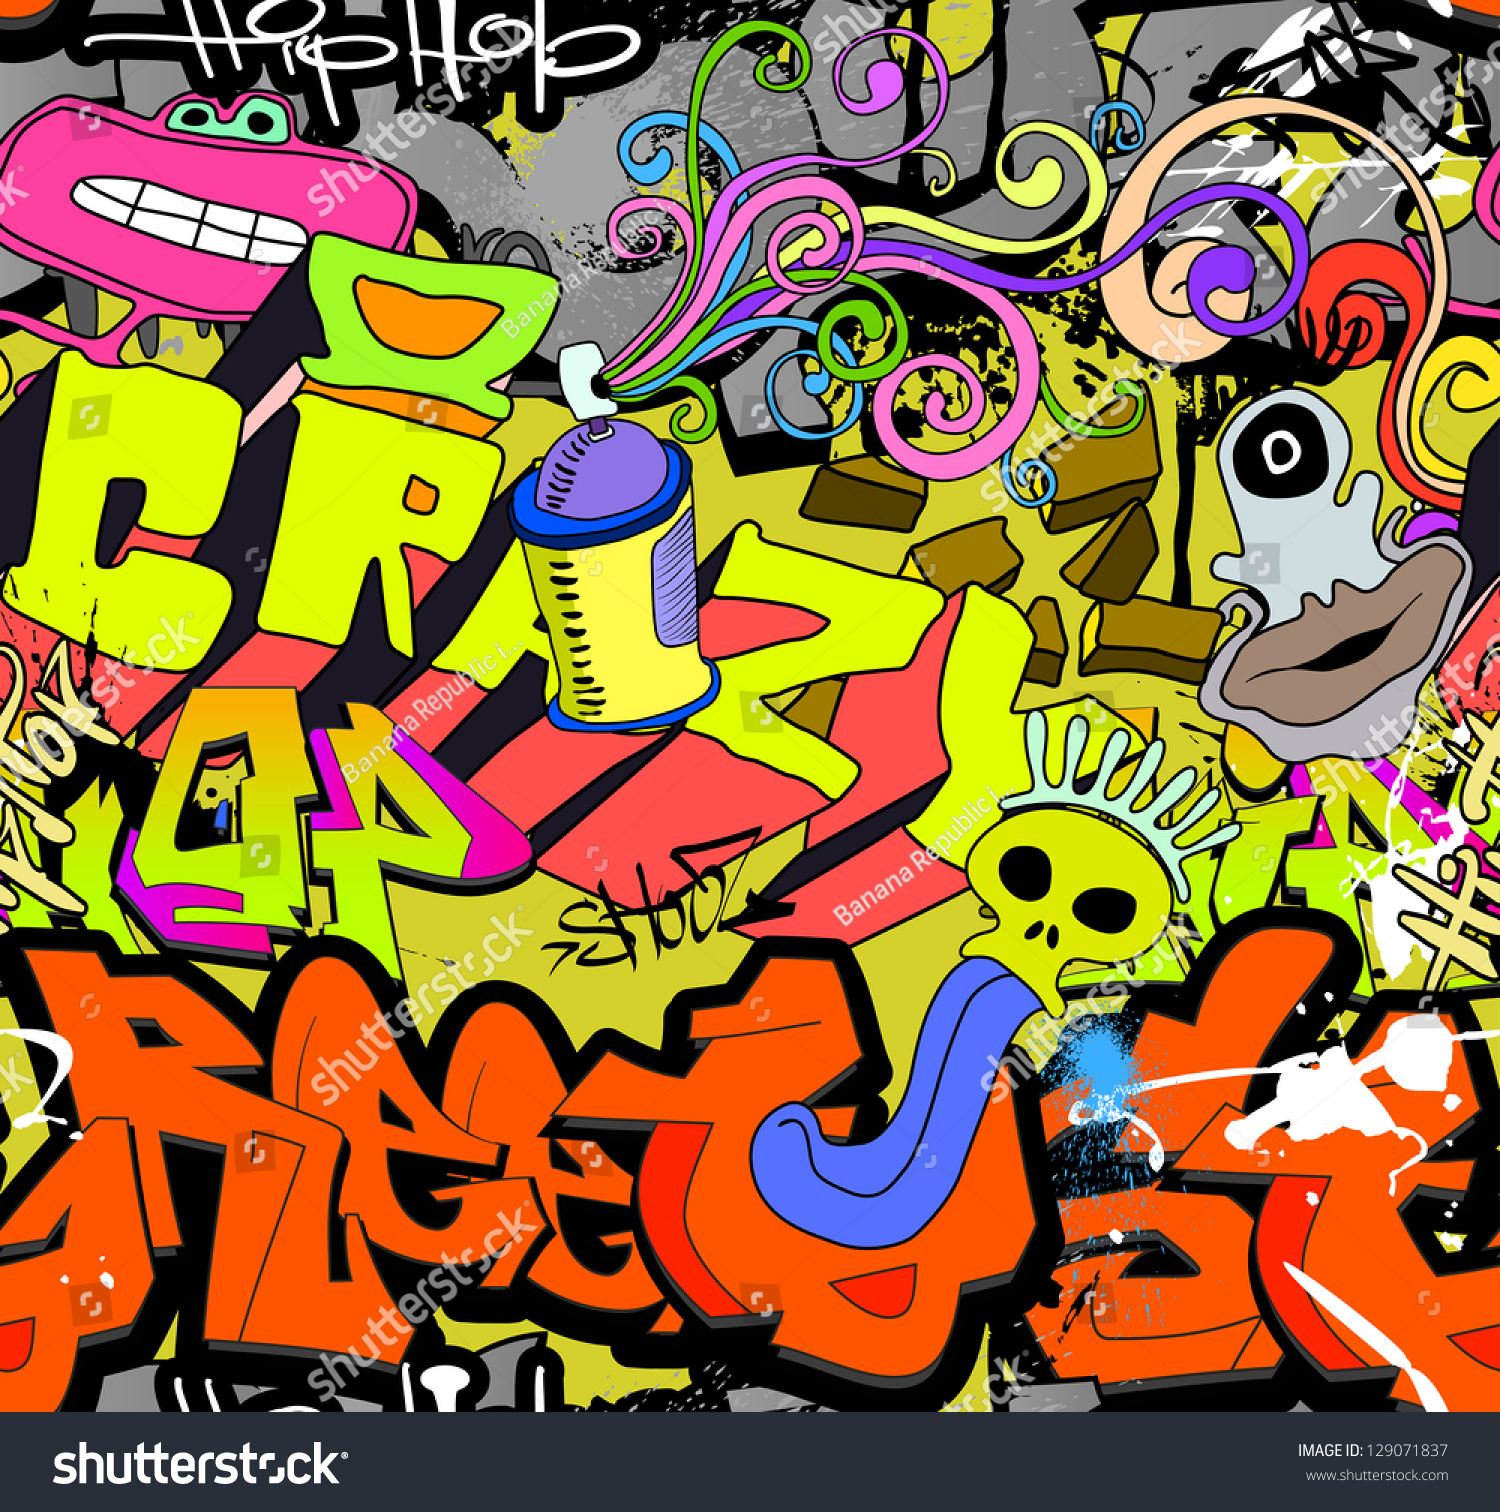 Graffiti Wall. Urban Art Vector Background - 129071837 : Shutterstock